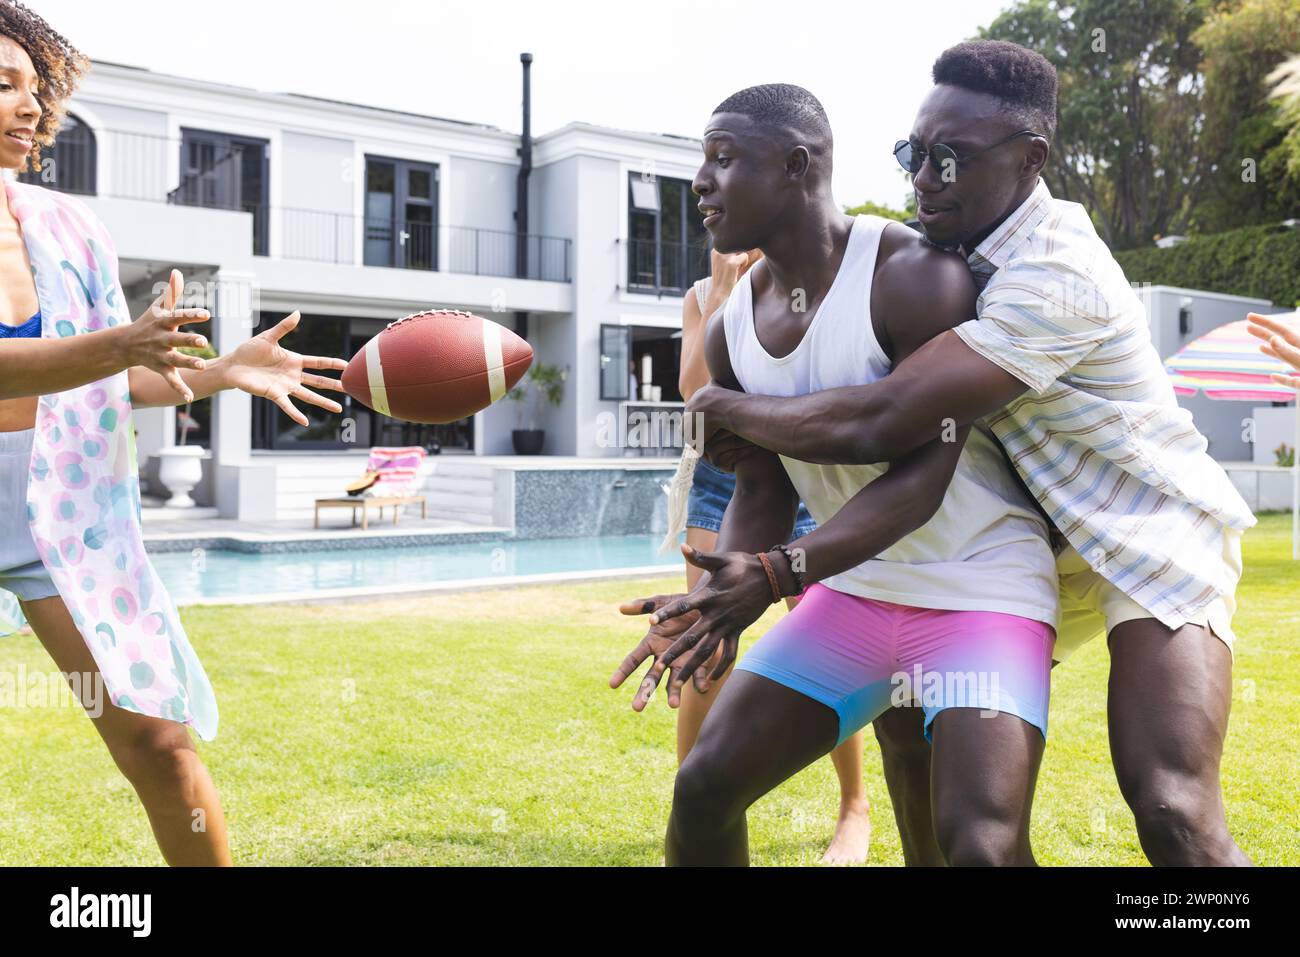 De jeunes hommes afro-américains jouent à la capture avec un ballon de football, une femme biraciale rejoint le plaisir Banque D'Images